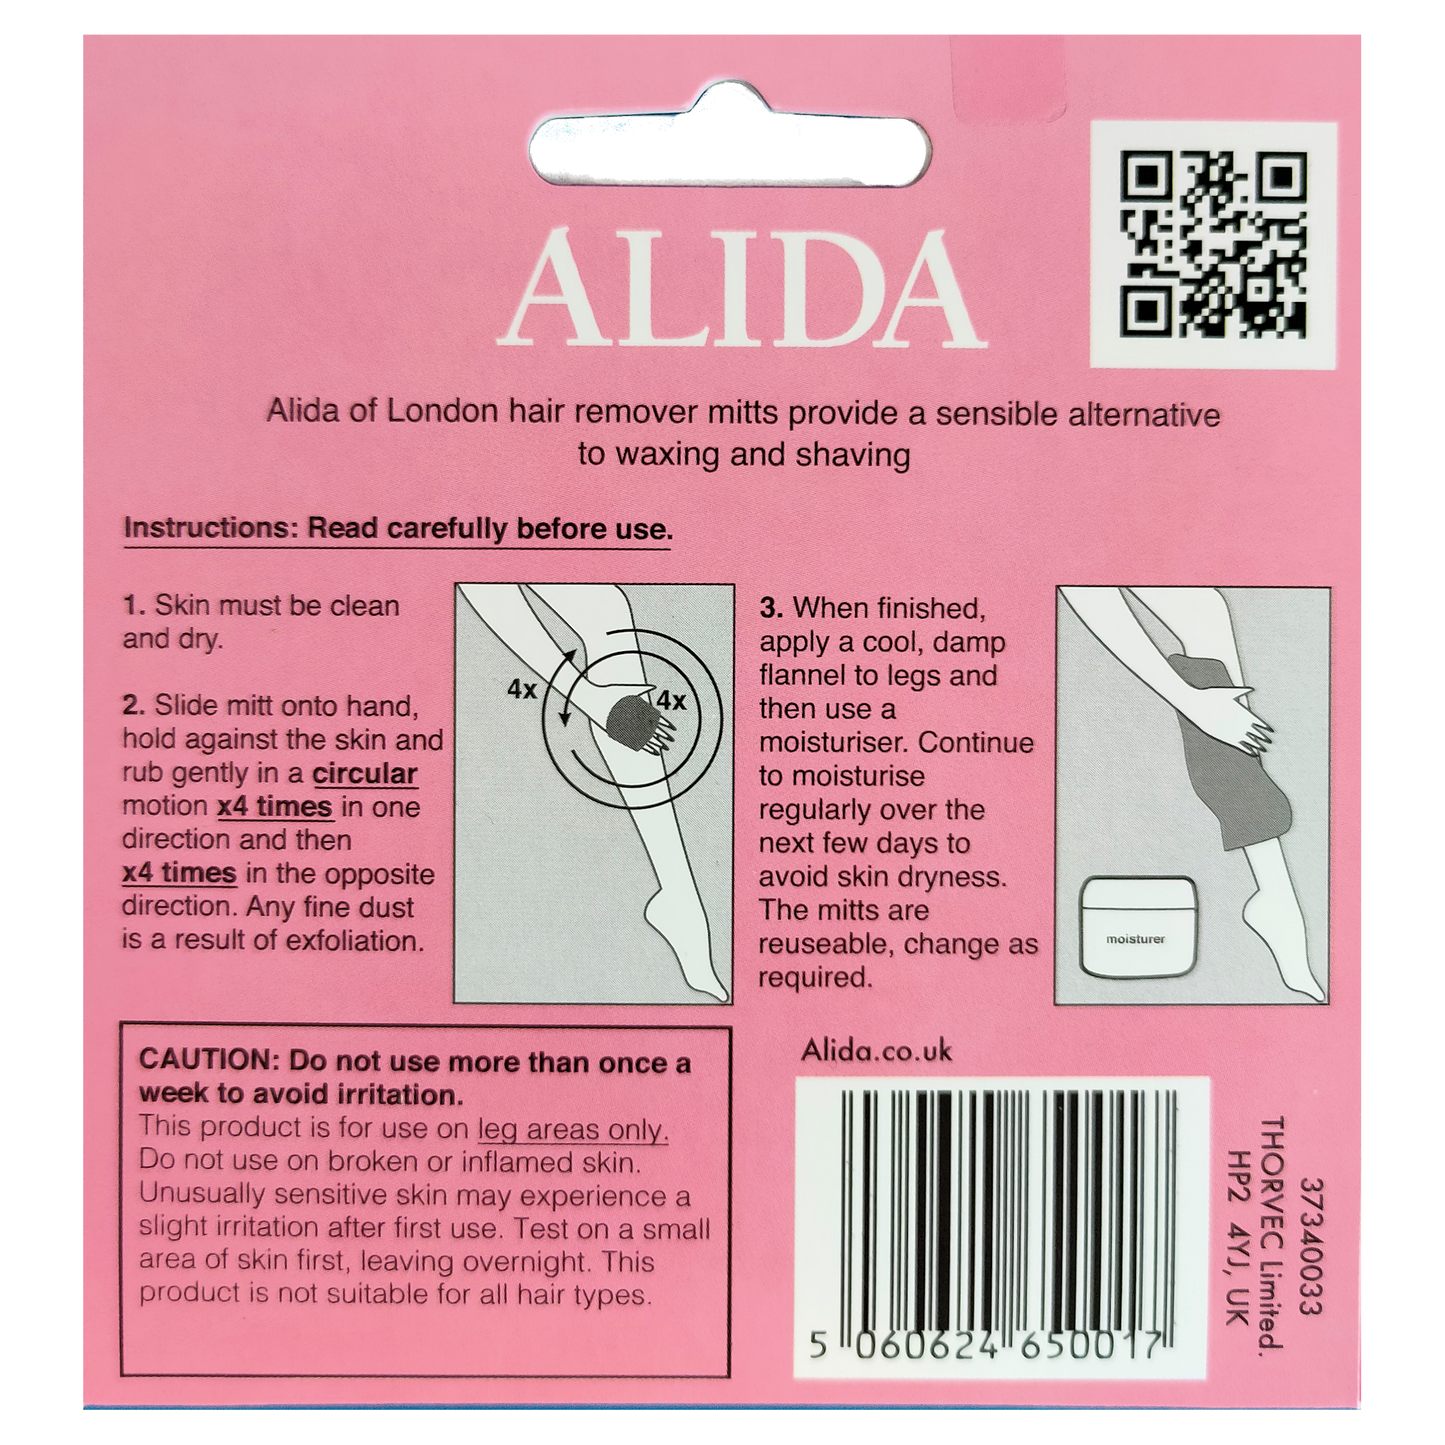 Alida Hair Remover Mitt for Legs (2 packs)